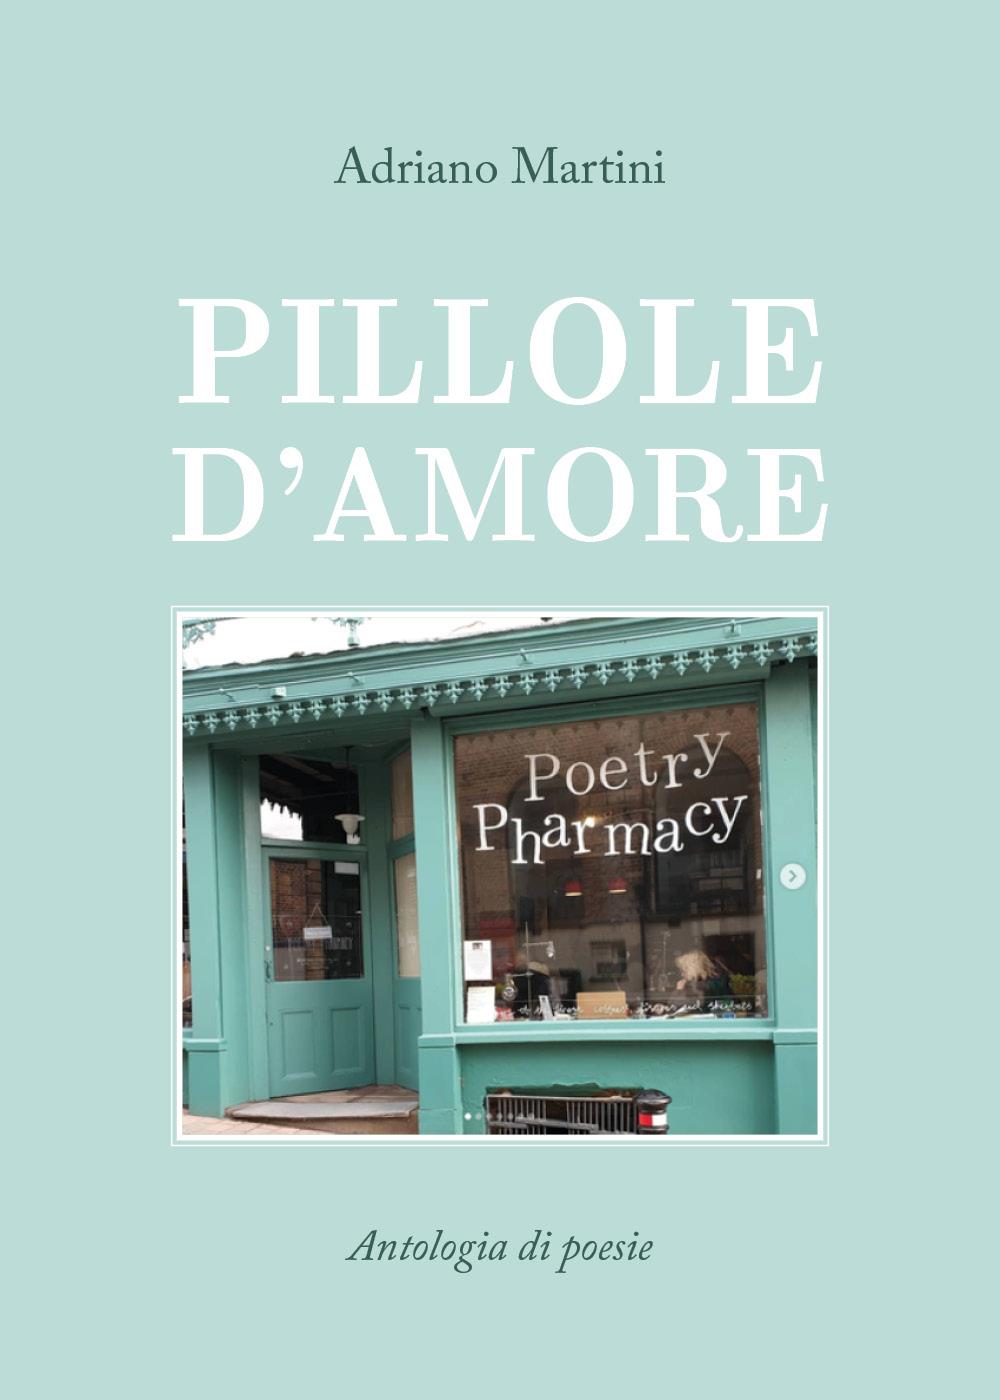 PILLOLE D'AMORE